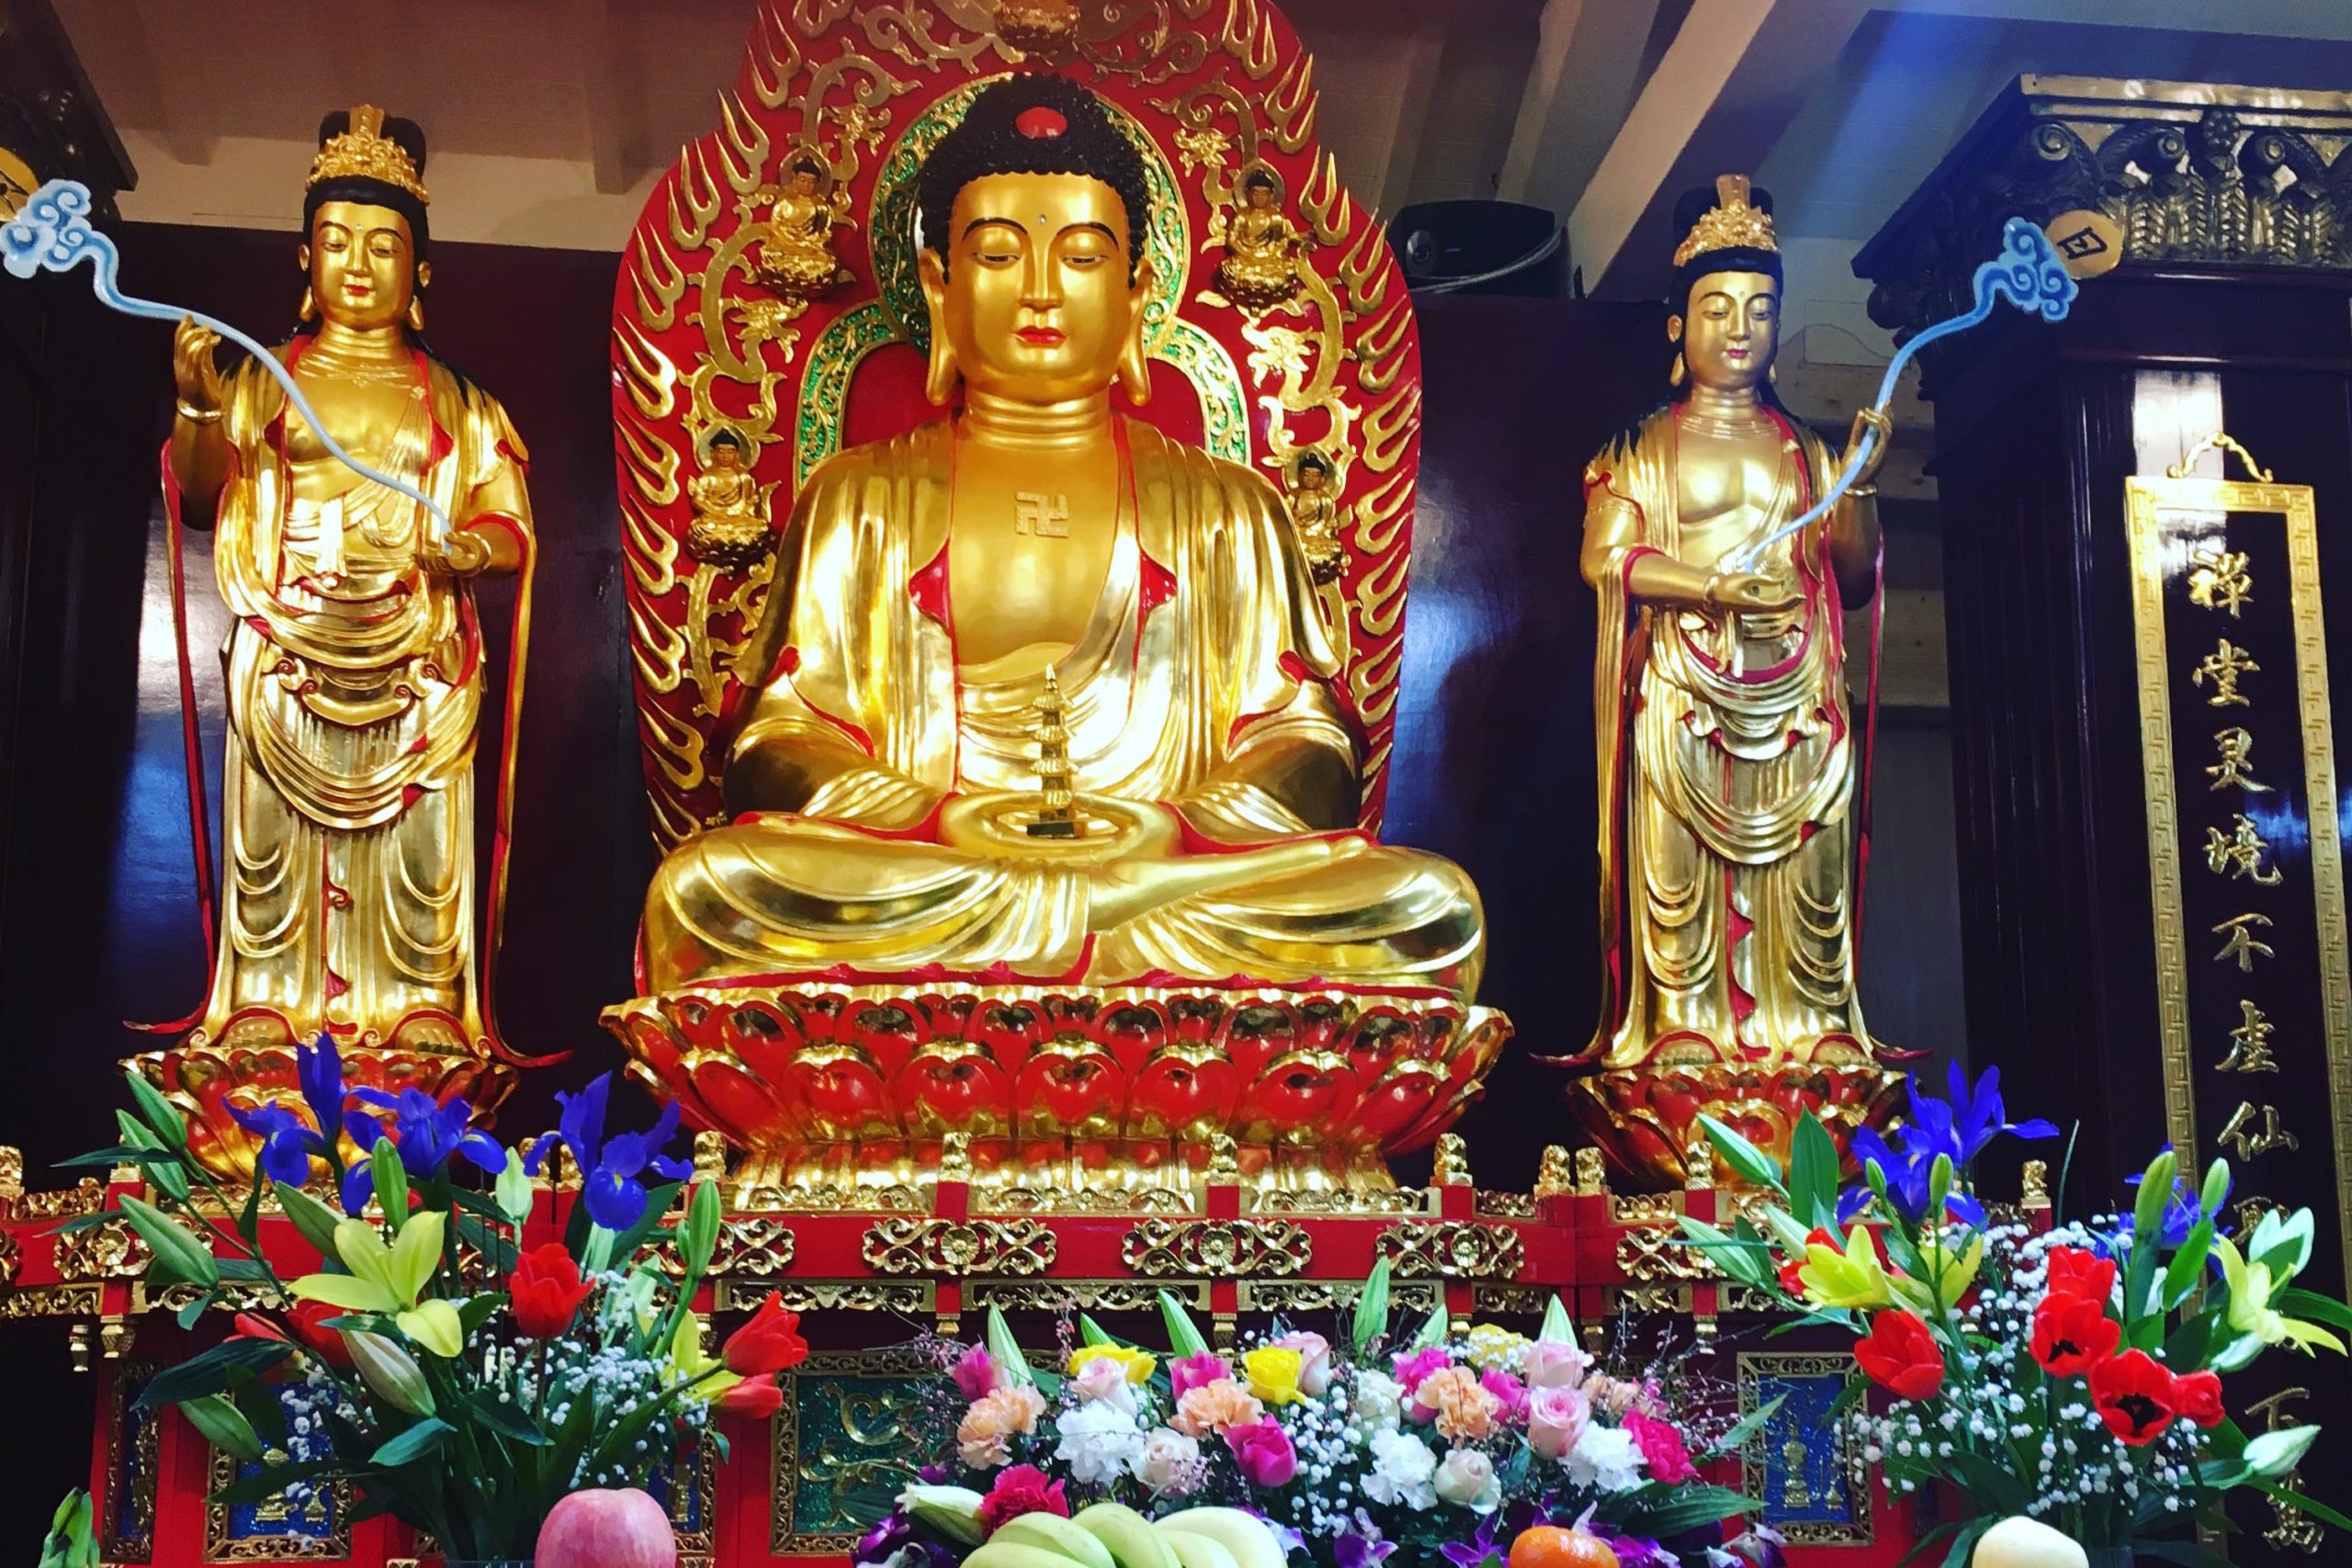 Il tempio buddhista compie 10 anni con sindaco e vescovo